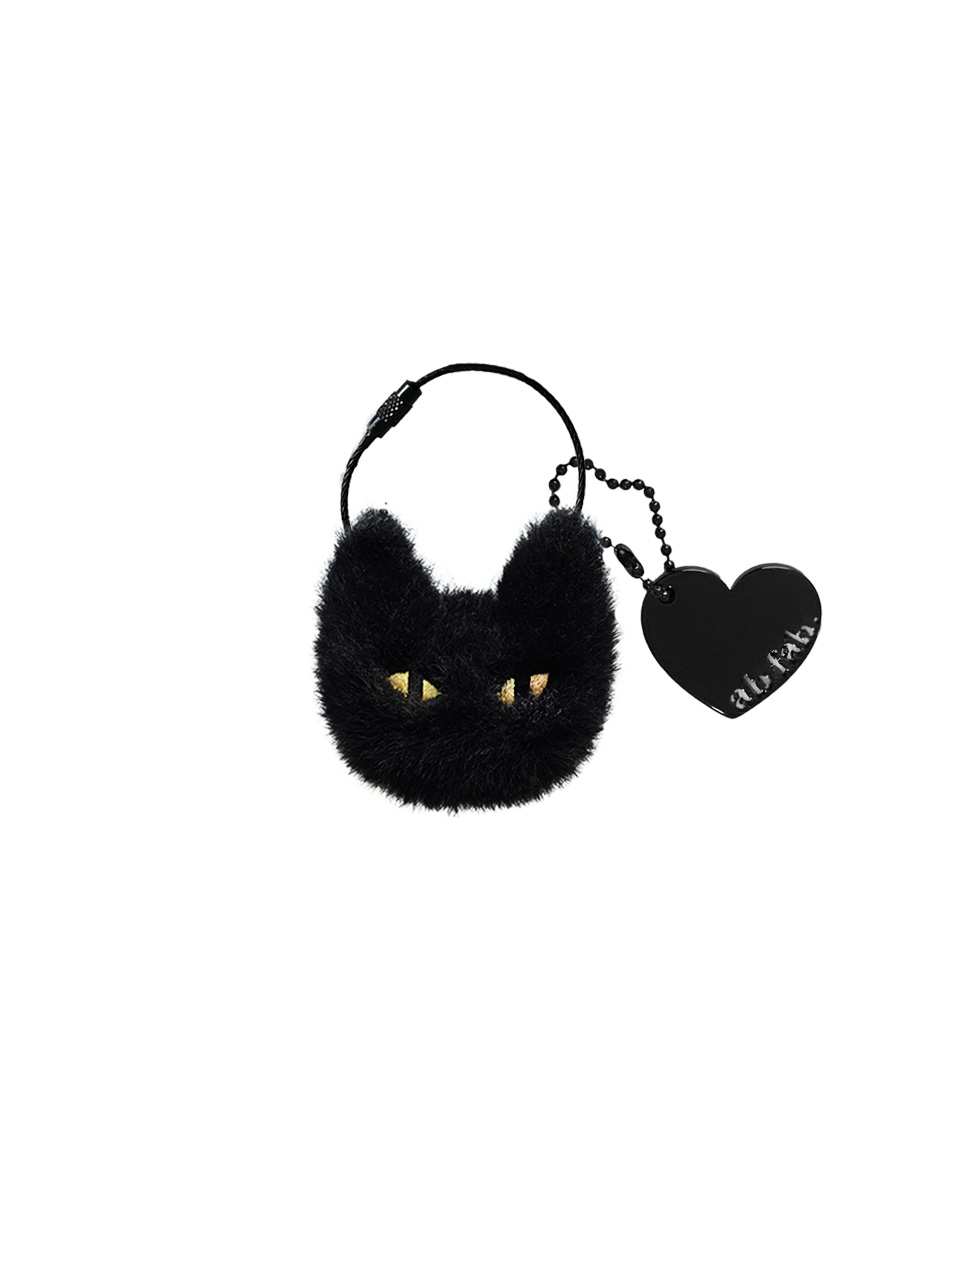 먐미 키링 ( Black cat )